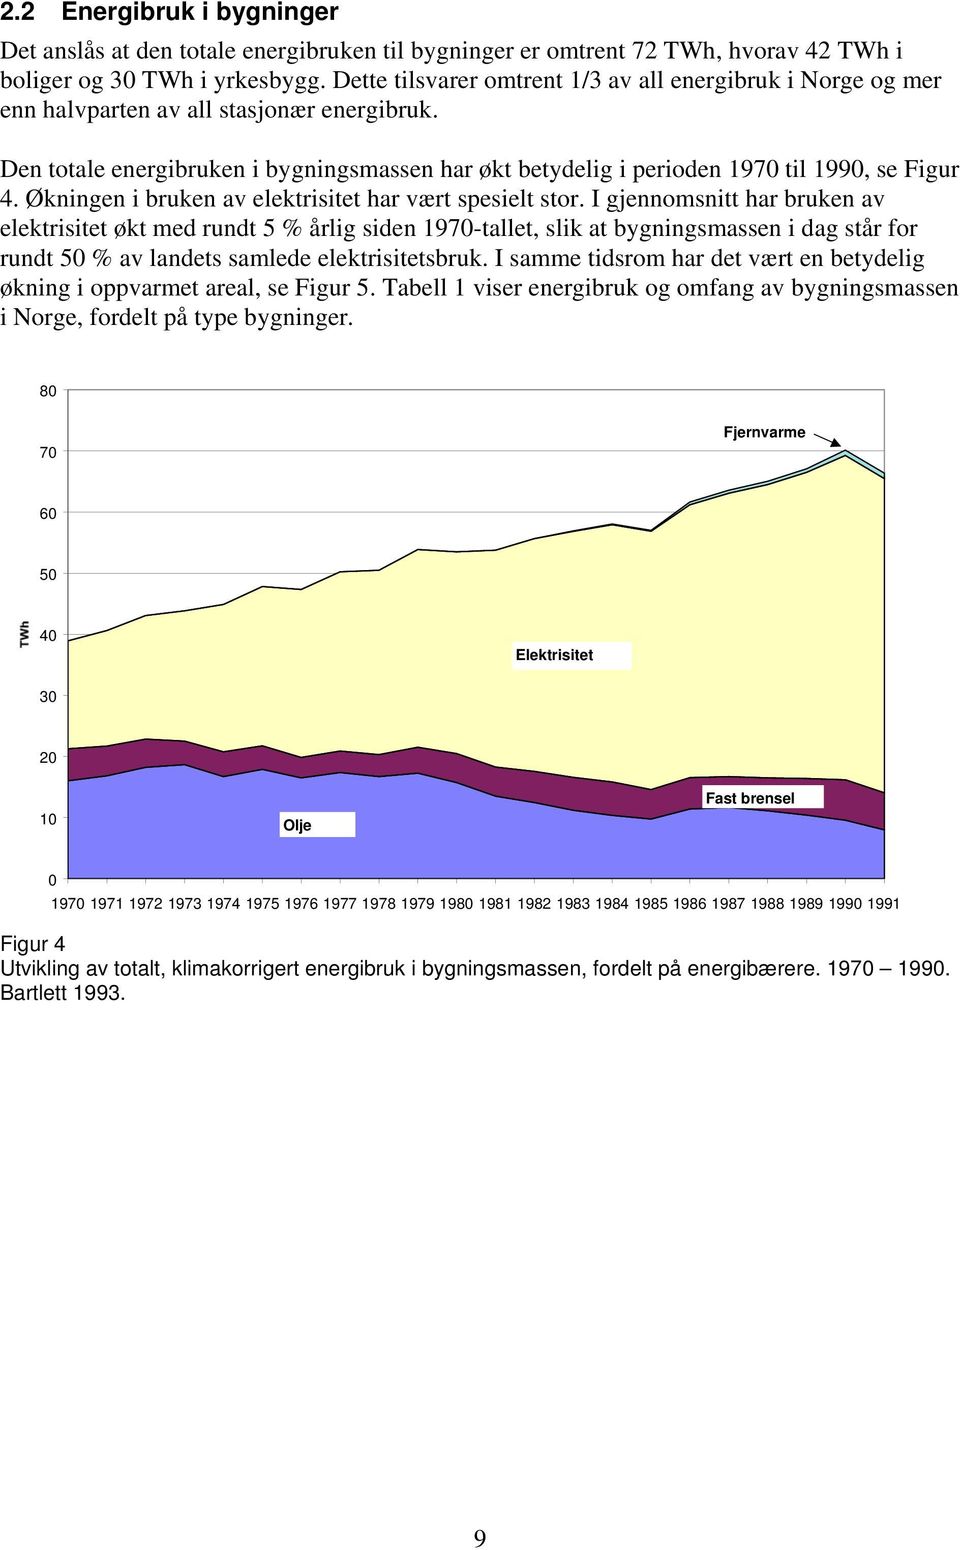 Den totale energibruken i bygningsmassen har økt betydelig i perioden 1970 til 1990, se Figur 4. Økningen i bruken av elektrisitet har vært spesielt stor.